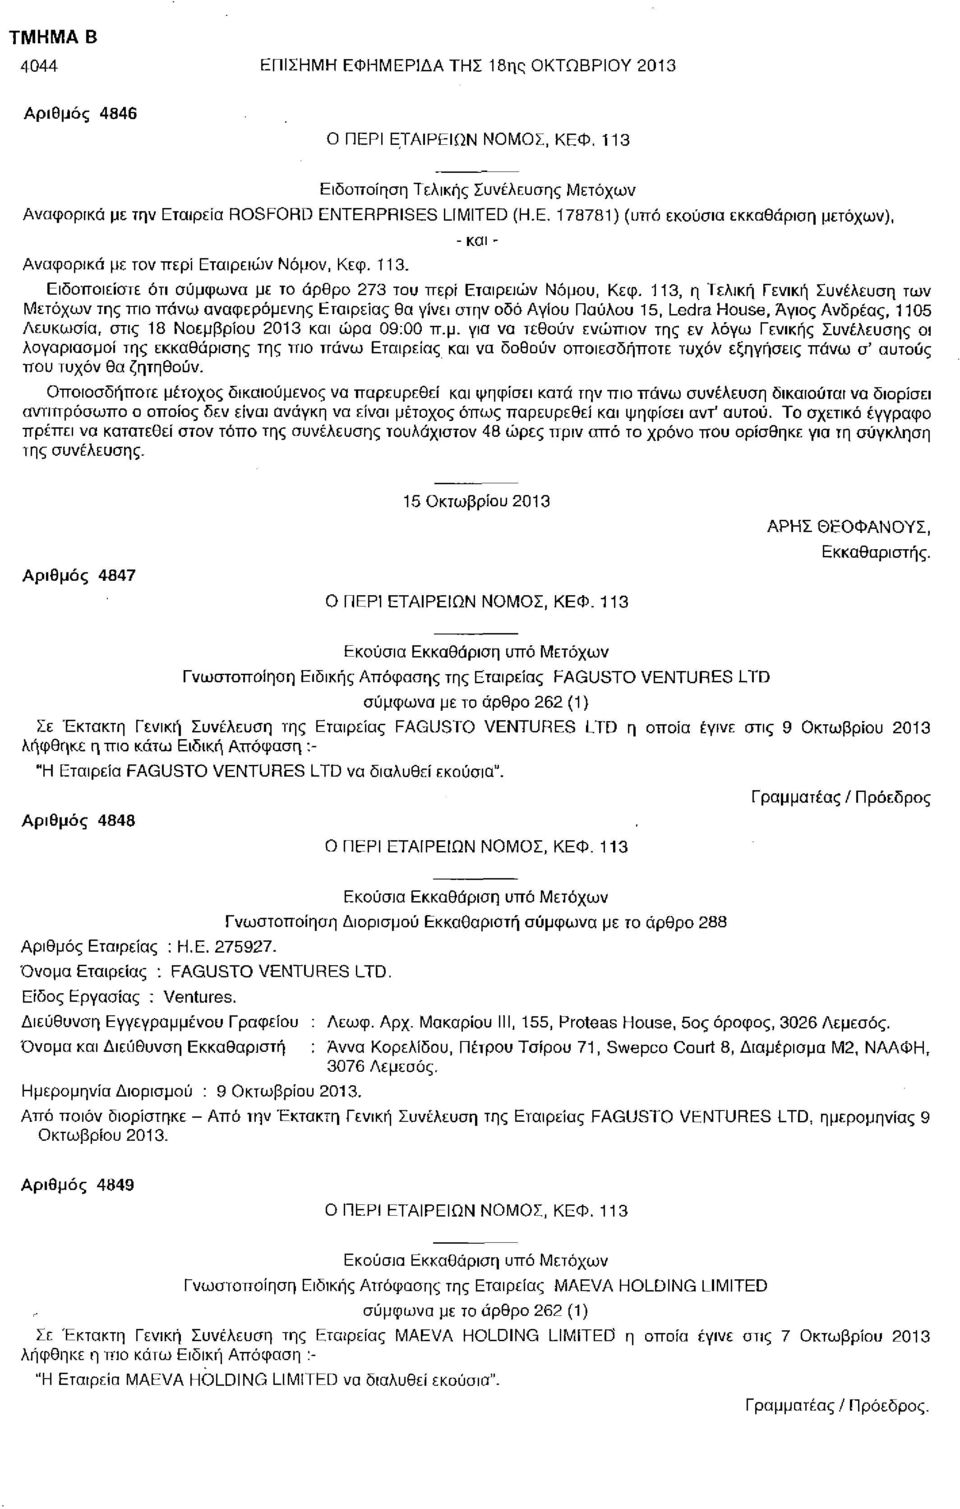 ΗΜΕΡΙΔΑ ΤΗΣ 18ης ΟΚΤΩΒΡΙΟΥ 2013 Αριθμός 4846 Αναφορικά με την Εταιρεία ROSFORD ENTERPRISES LIMITED (Η.Ε. 178781) (υπό εκούσια εκκαθάριση μετόχων), Μετόχων της πιο πάνω αναφερόμενης Εταιρείας θα γίνει